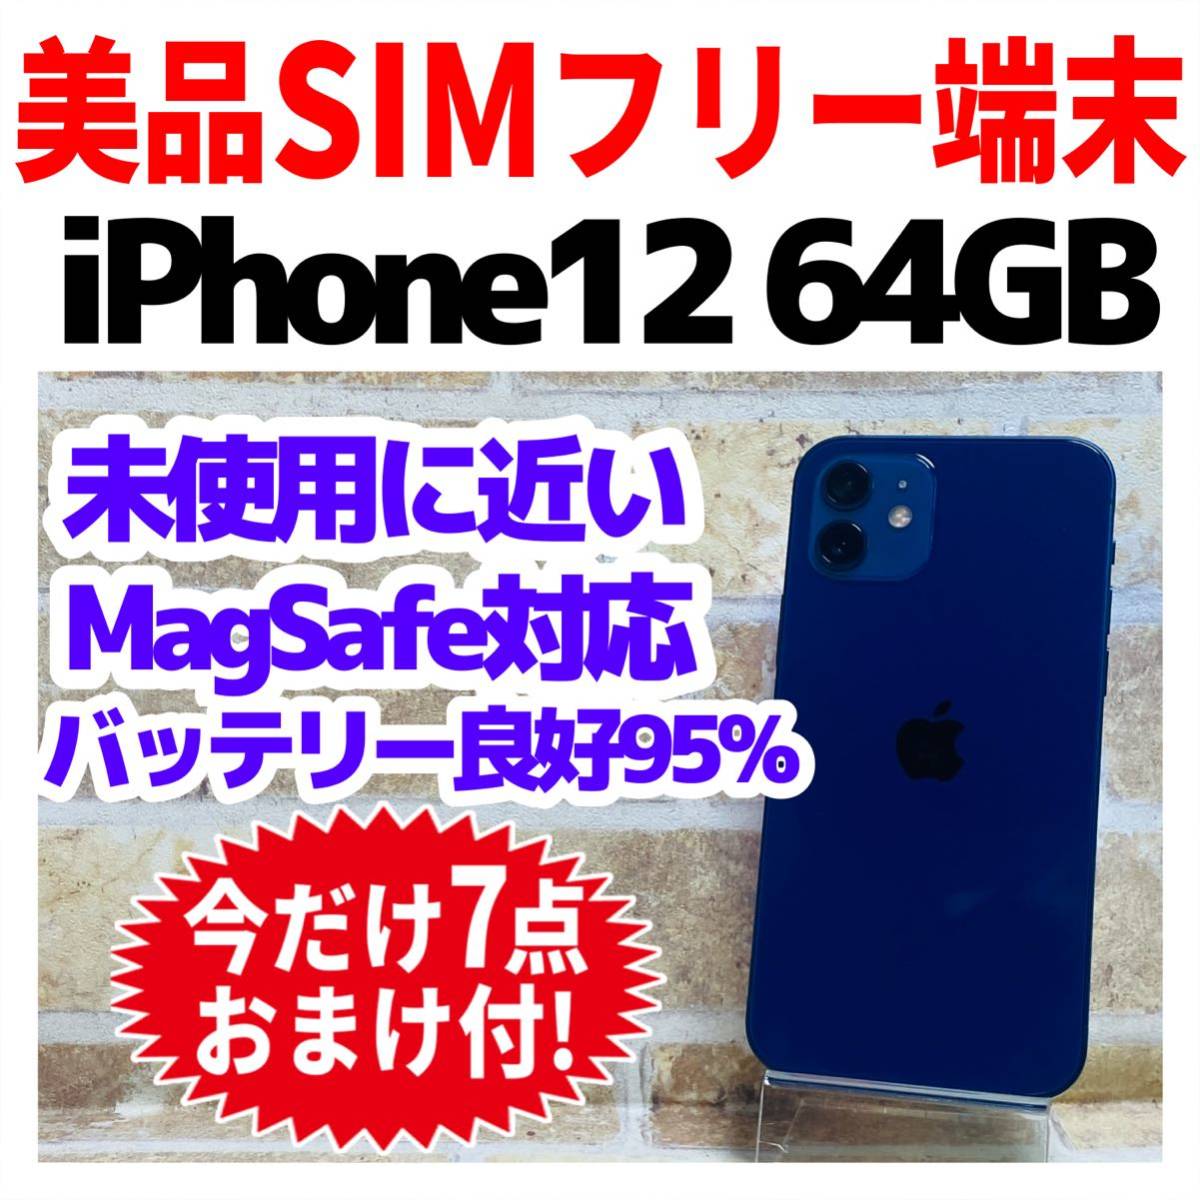 訳あり】iphone 12 mini 64GB SIMフリー ブルー | myglobaltax.com